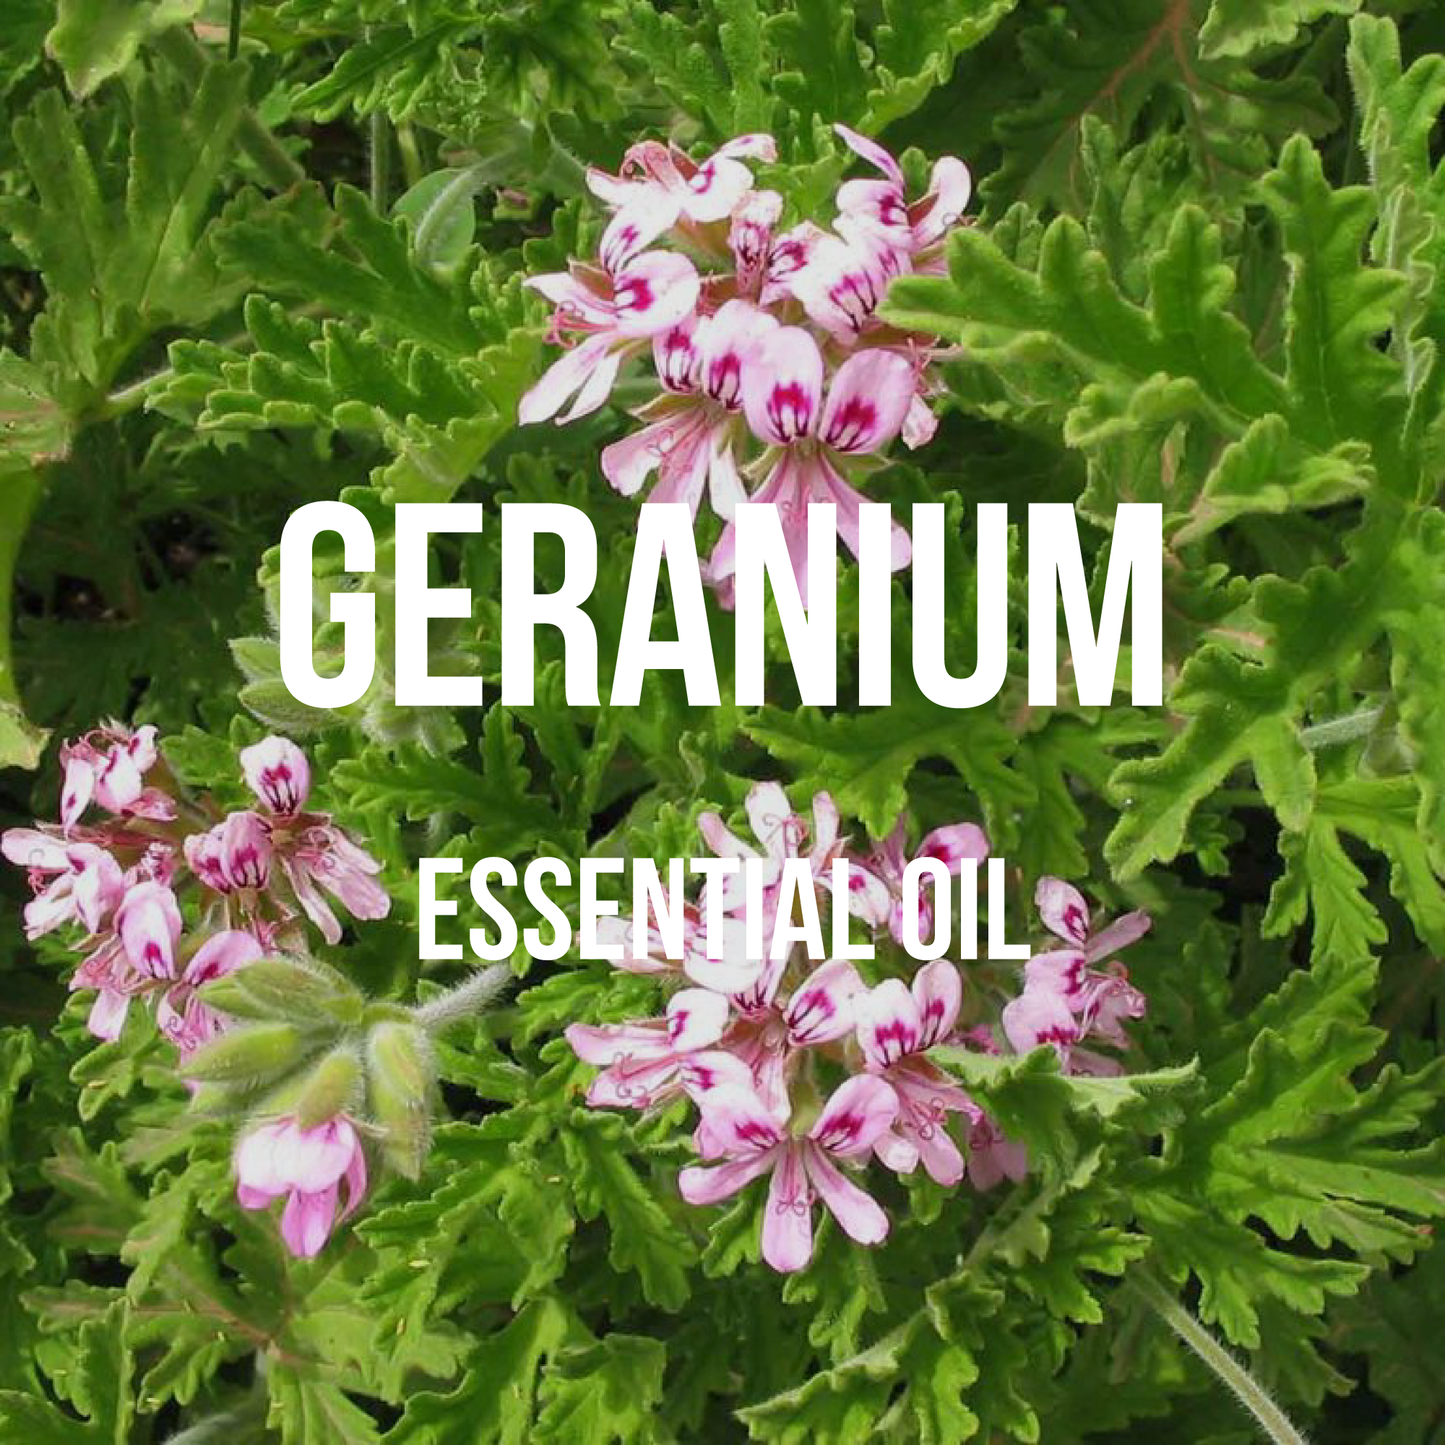 Geranium (Egyptian) Essential Oil